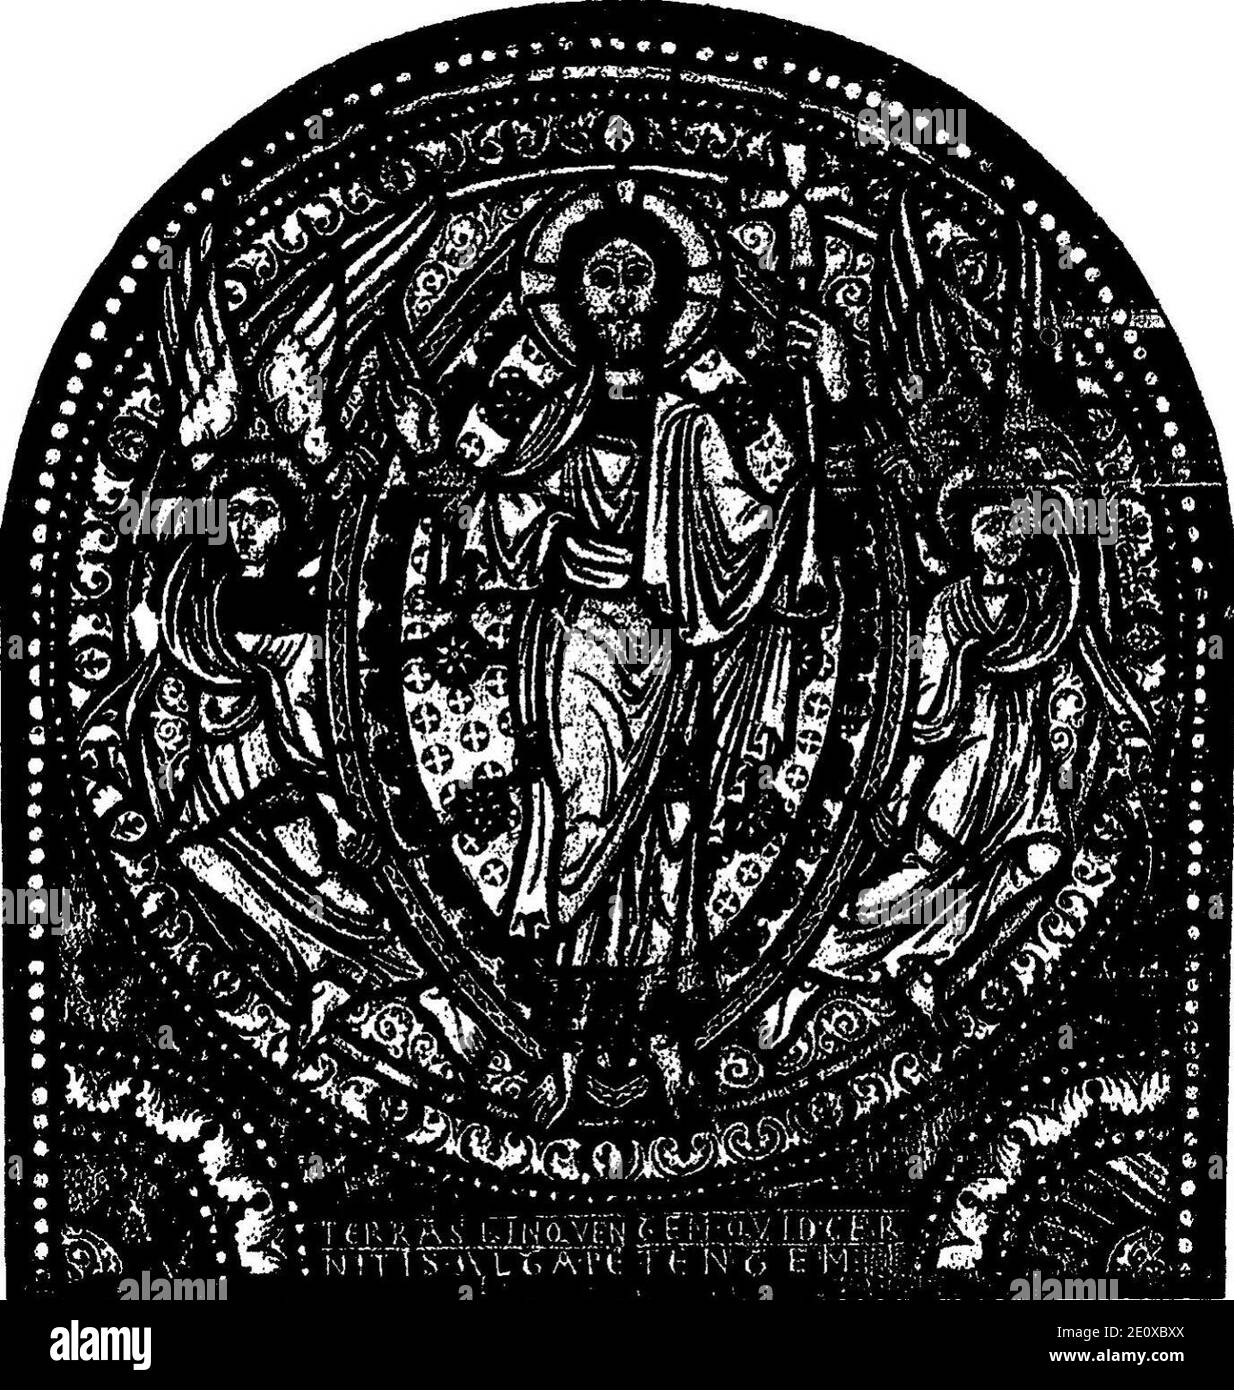 Les vitraux du Moyen âge et de la Renaissance dans la région lyonnaise - 005 - Christ en gloire. Stock Photo